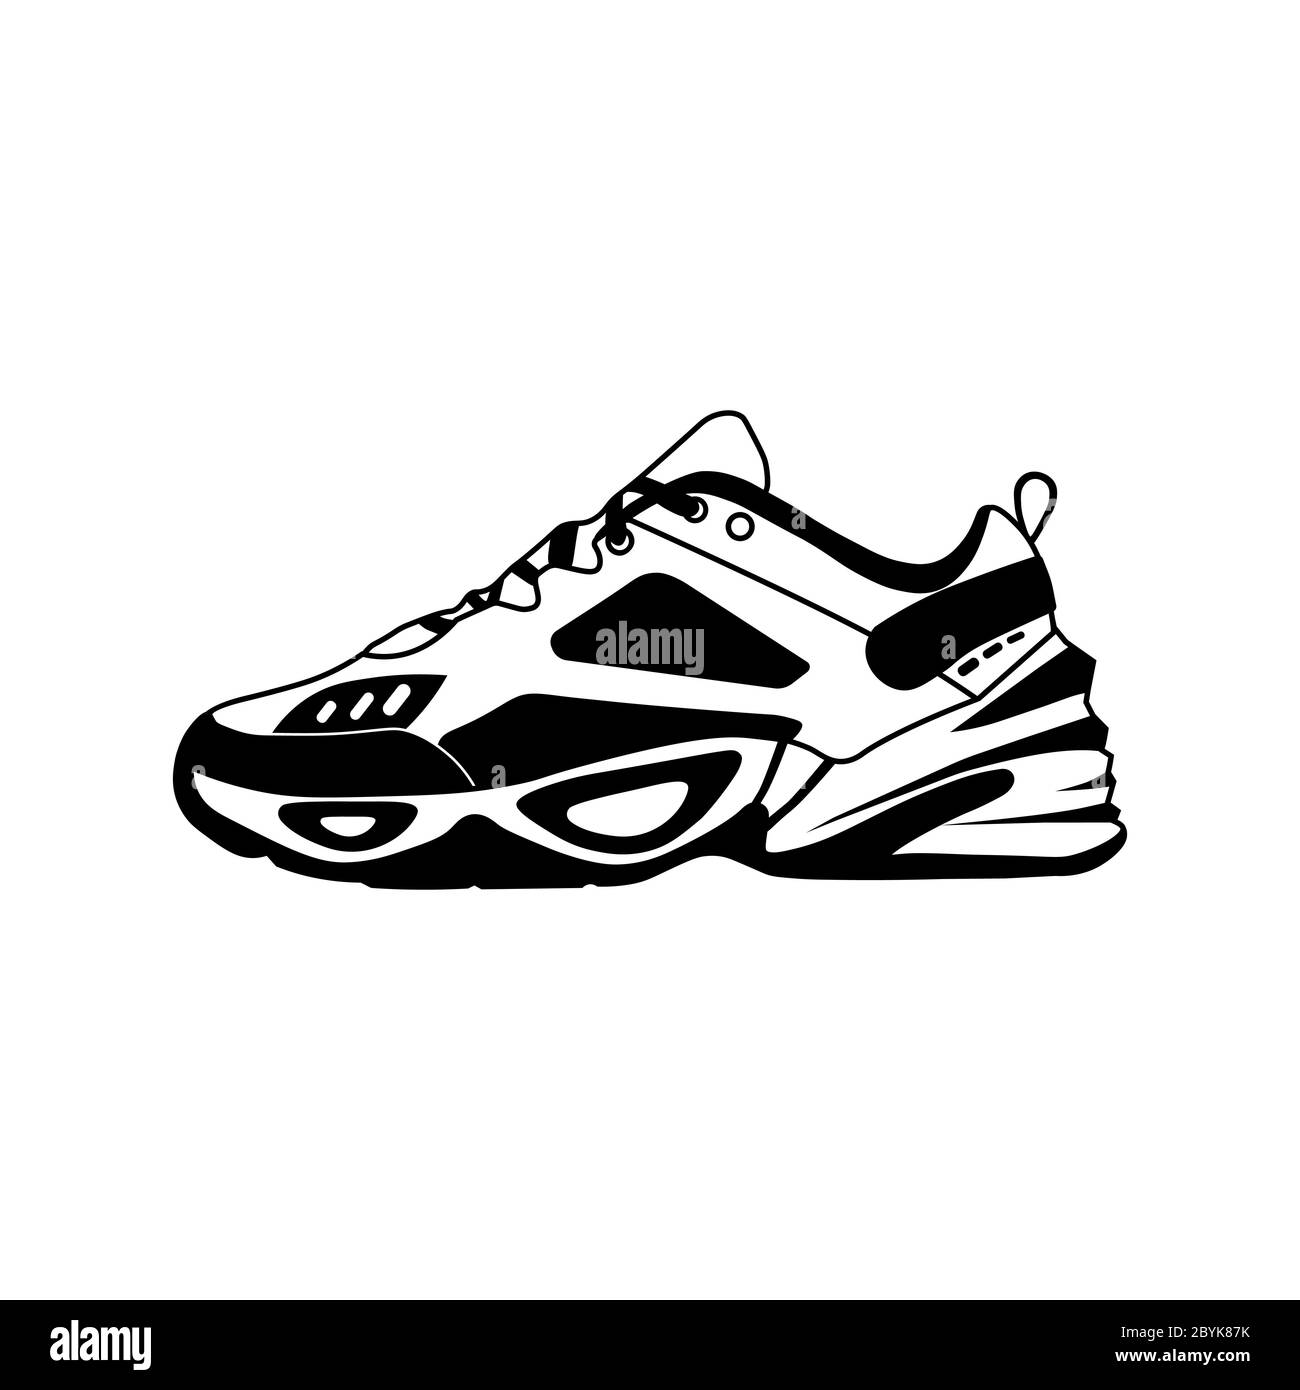 Icona vettoriale sneaker in nero o realistico scarpe da running sportive moda per allenamento e fitness su uno sfondo bianco isolato. Vettore EPS 10. Illustrazione Vettoriale